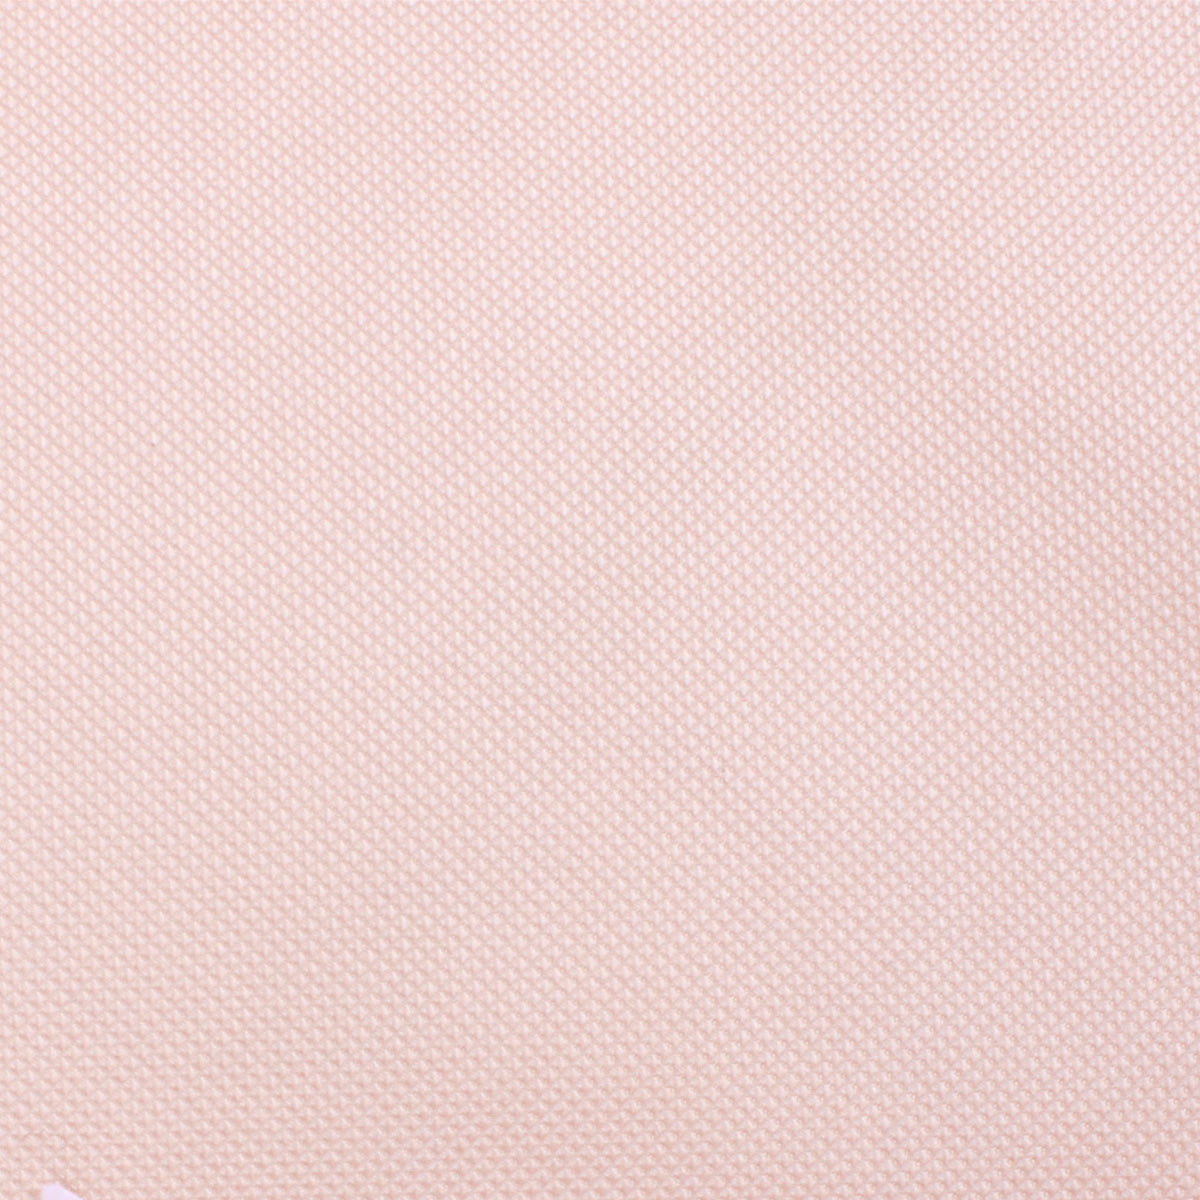 Liege Blush Pink Diamond Necktie Fabric